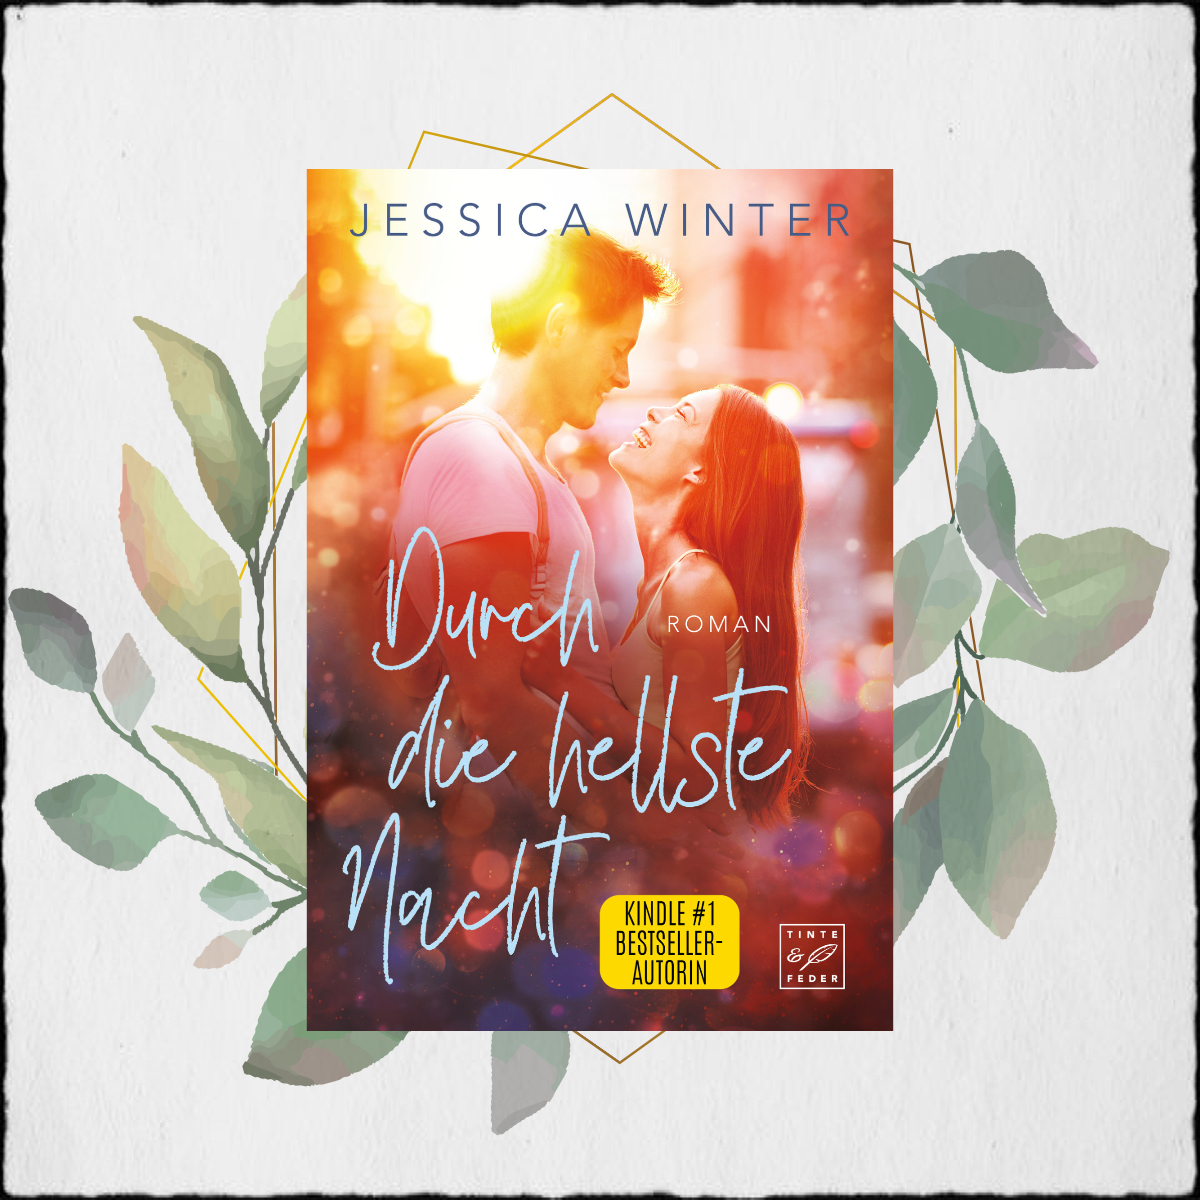 Jessica Winter “Durch die hellste Nacht” © 2022 Jessica Winter in Selbstpublikation – Tinte & Feder